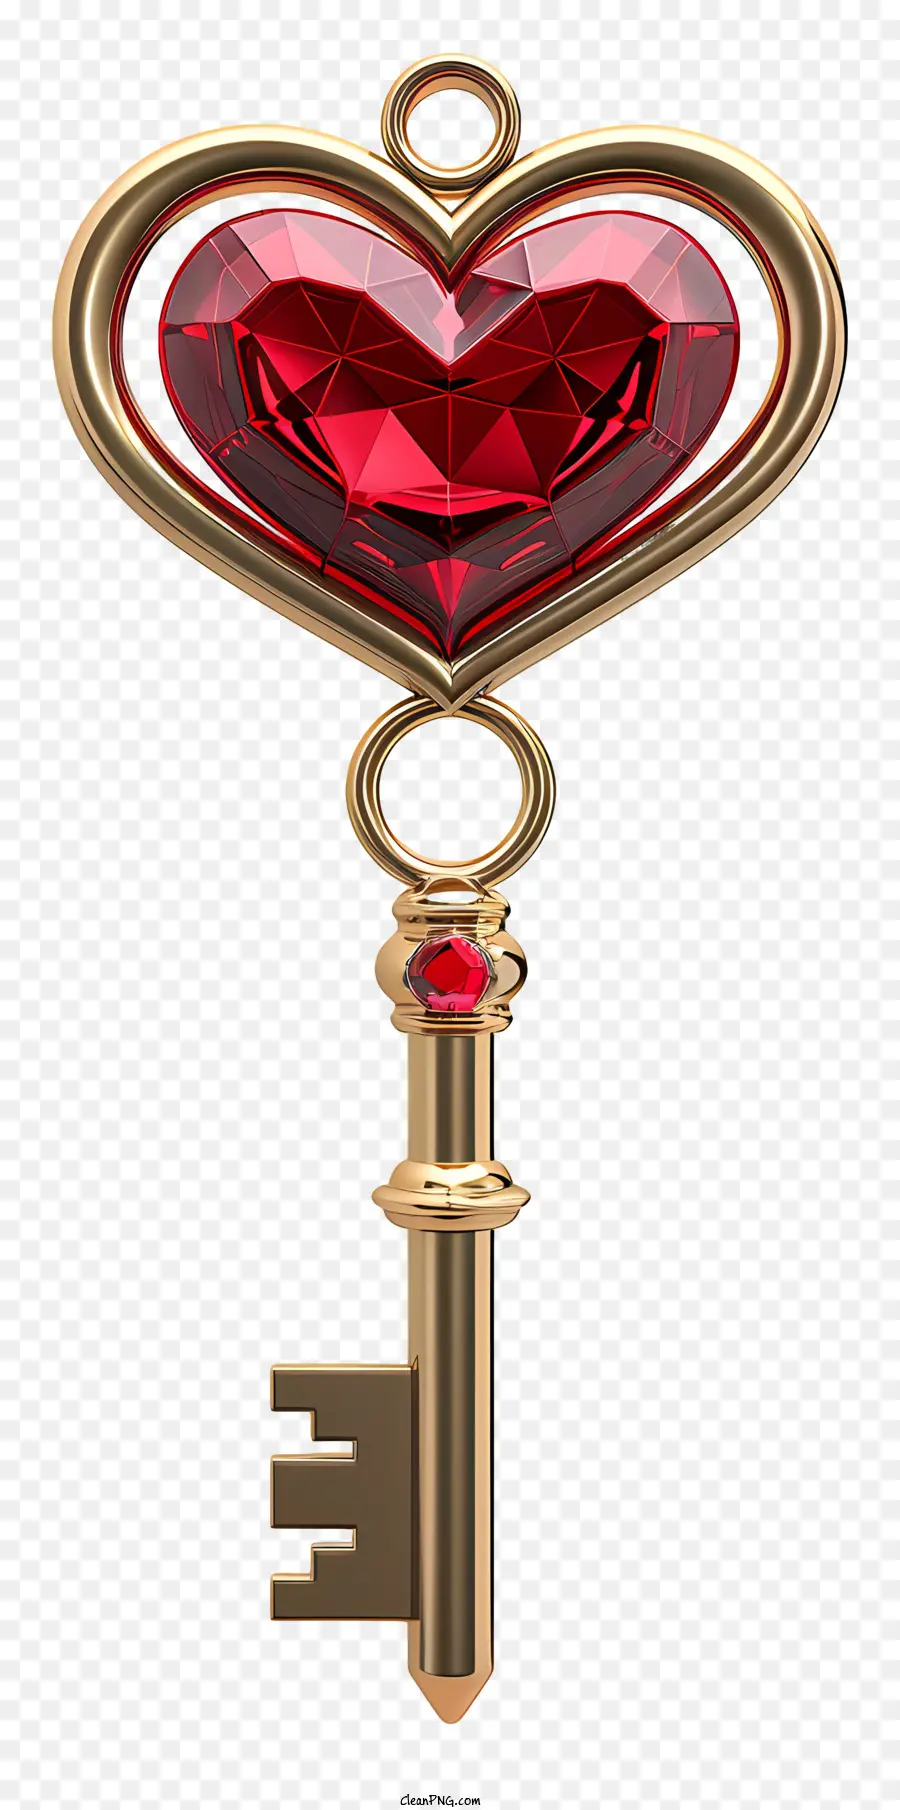 Valentine Key Golden Key herzförmige, key rote herzförmige Steindiamantakzente - Goldener Herzschlüssel mit roten Stein und Diamanten